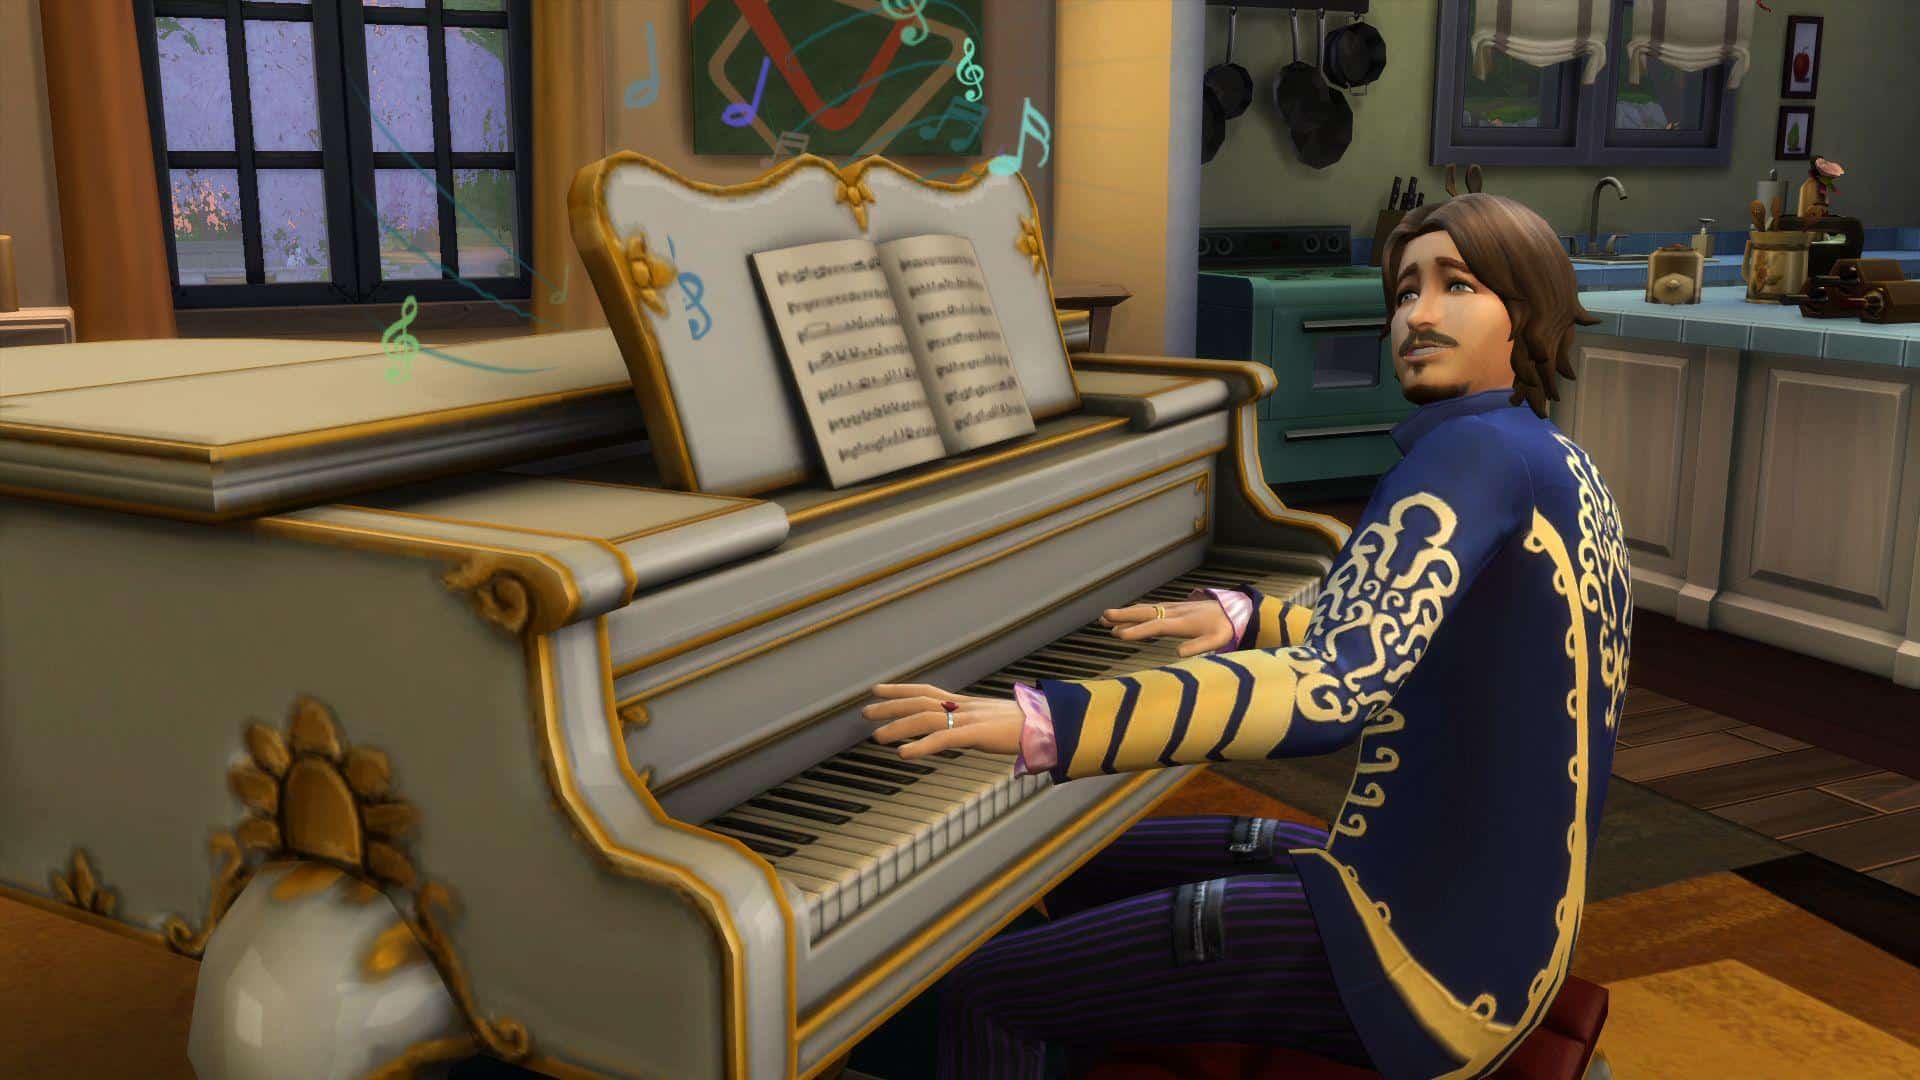 The Sims 4 Spolszczenie Chomikuj